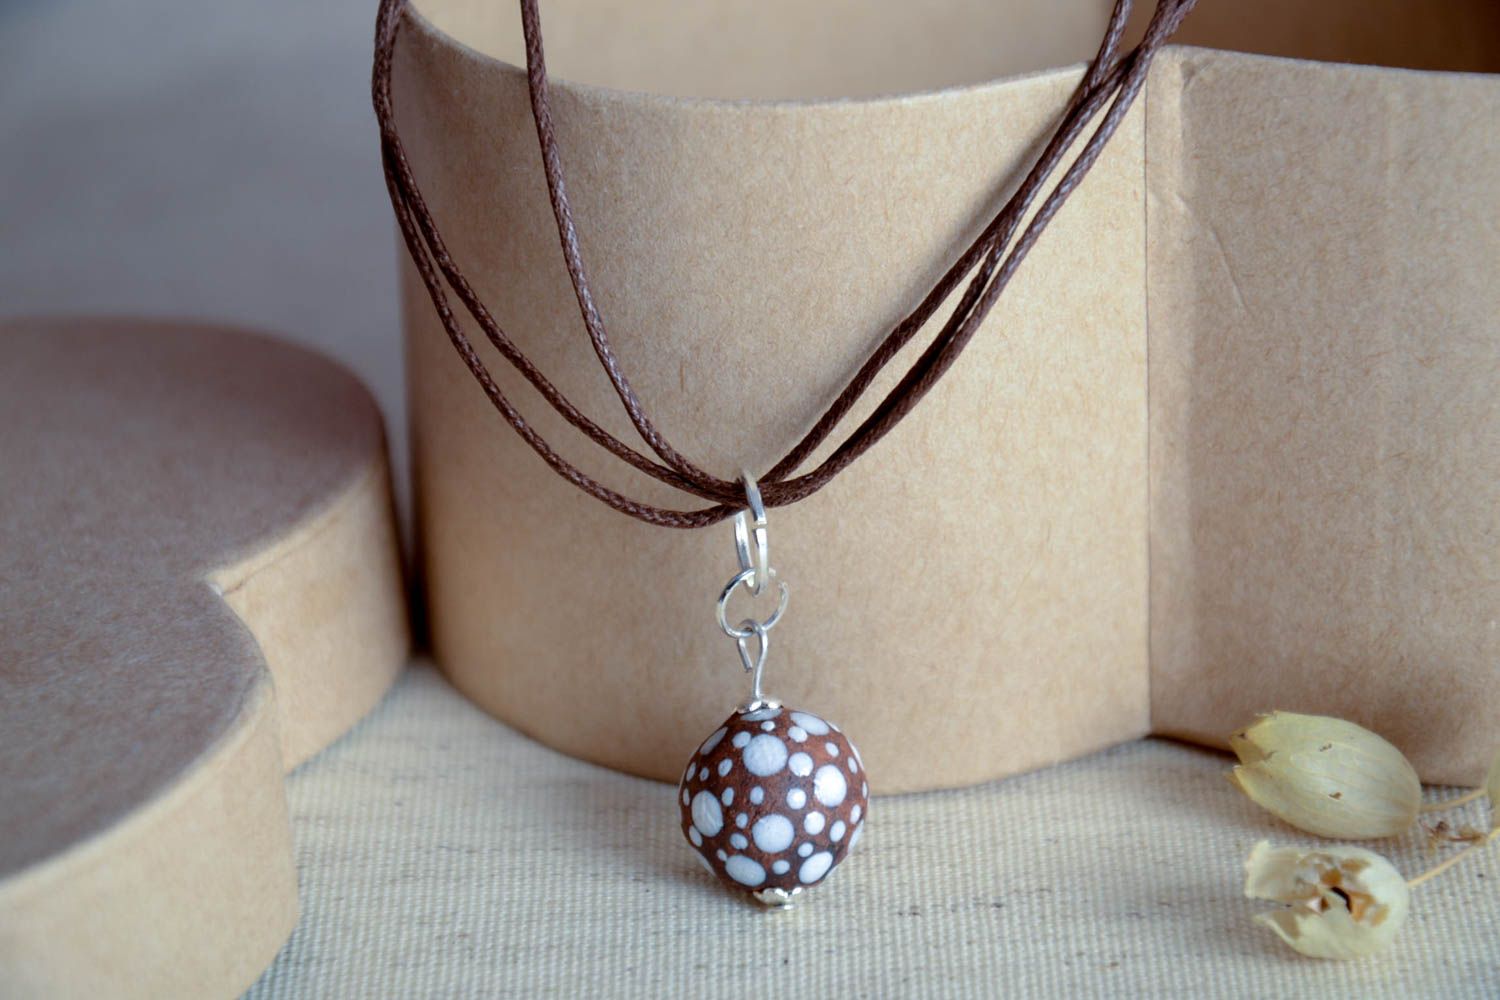 Stylish pendant on lace ceramic handmade pendant female accessory gift photo 1